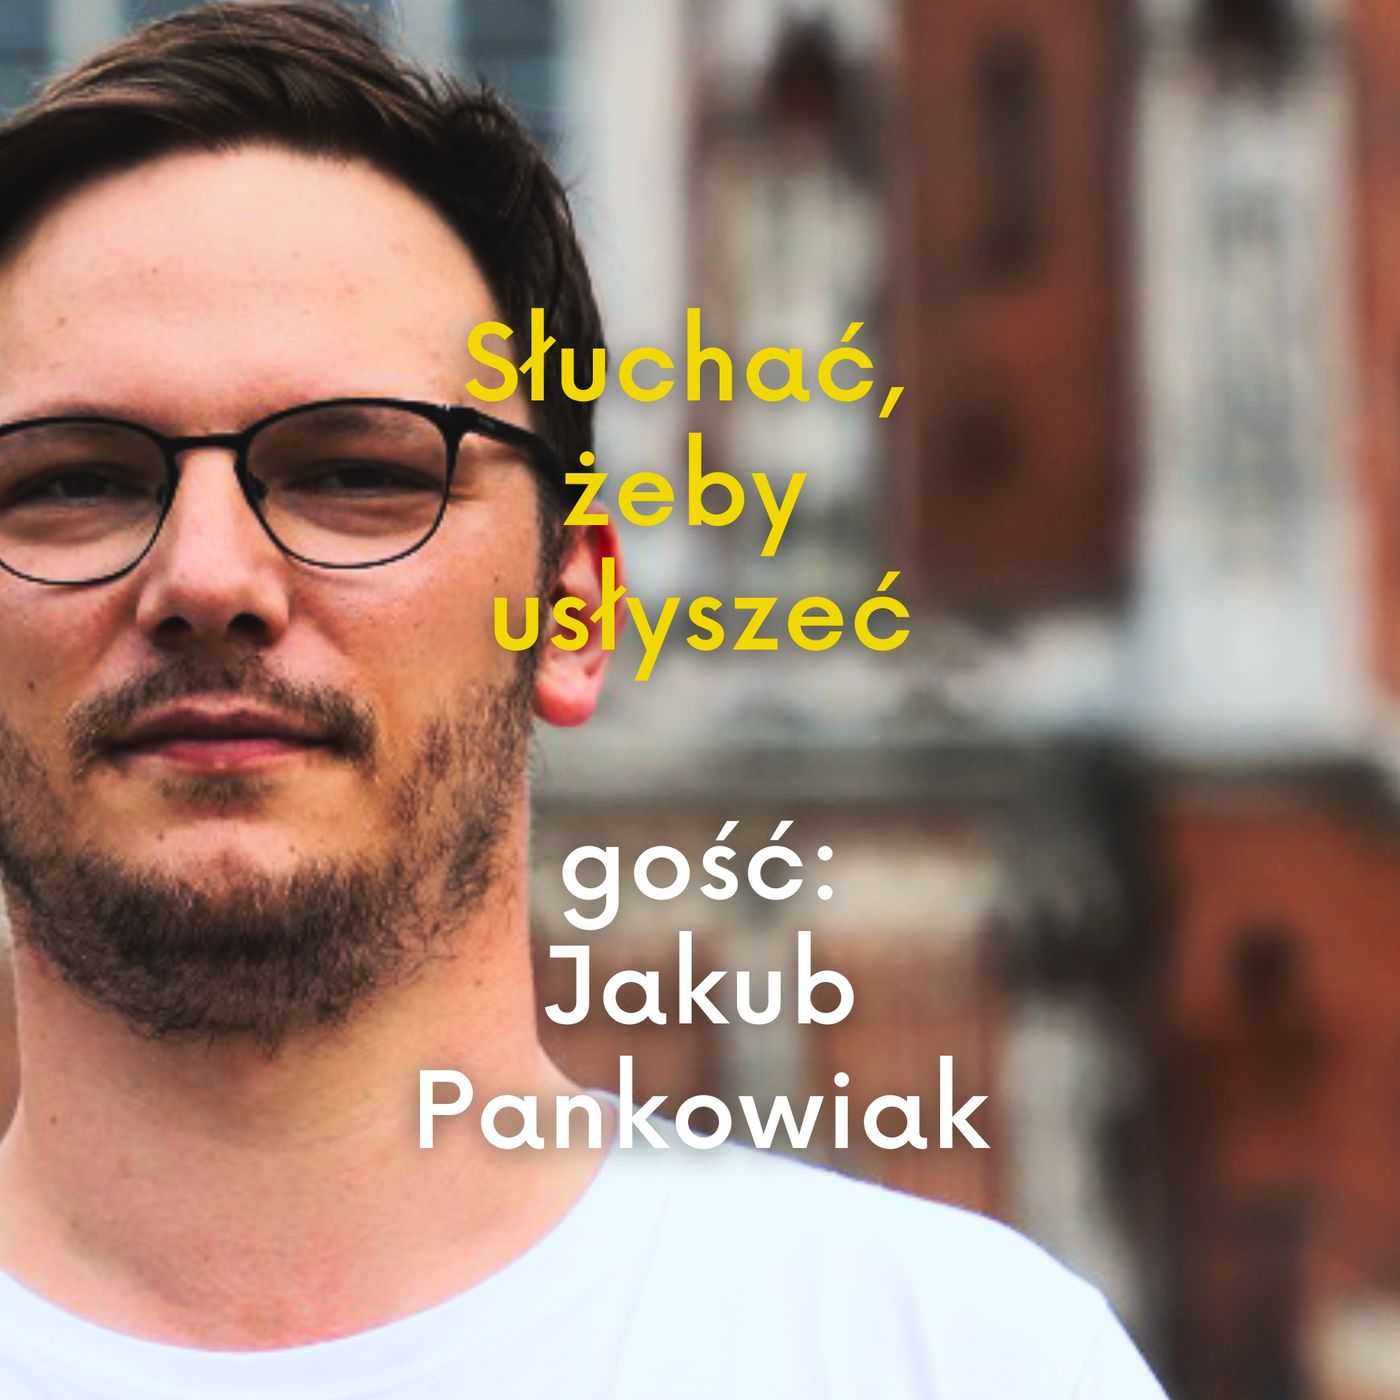 Jakub Pankowiak po roku bolesnych doświadczeń w kontaktach z polskimi biskupami mówi: "To nie są moi pasterze"